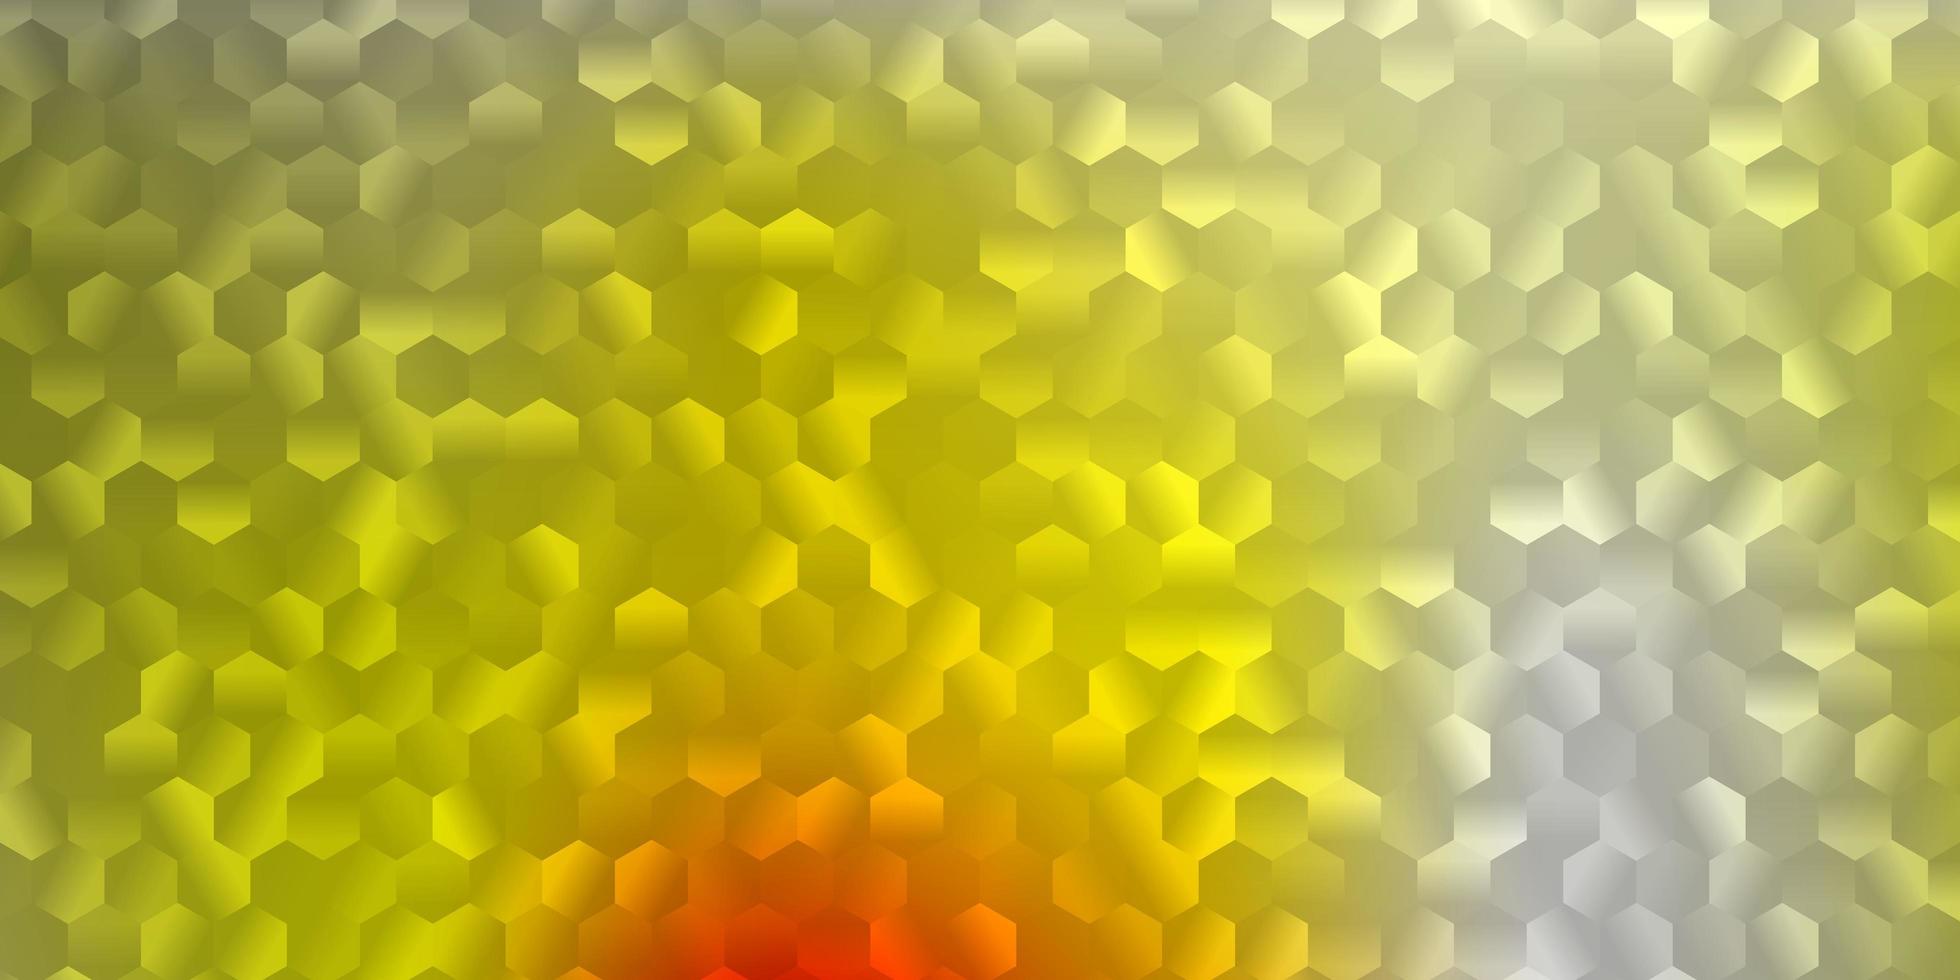 patrón de vector rojo, amarillo claro con formas abstractas.